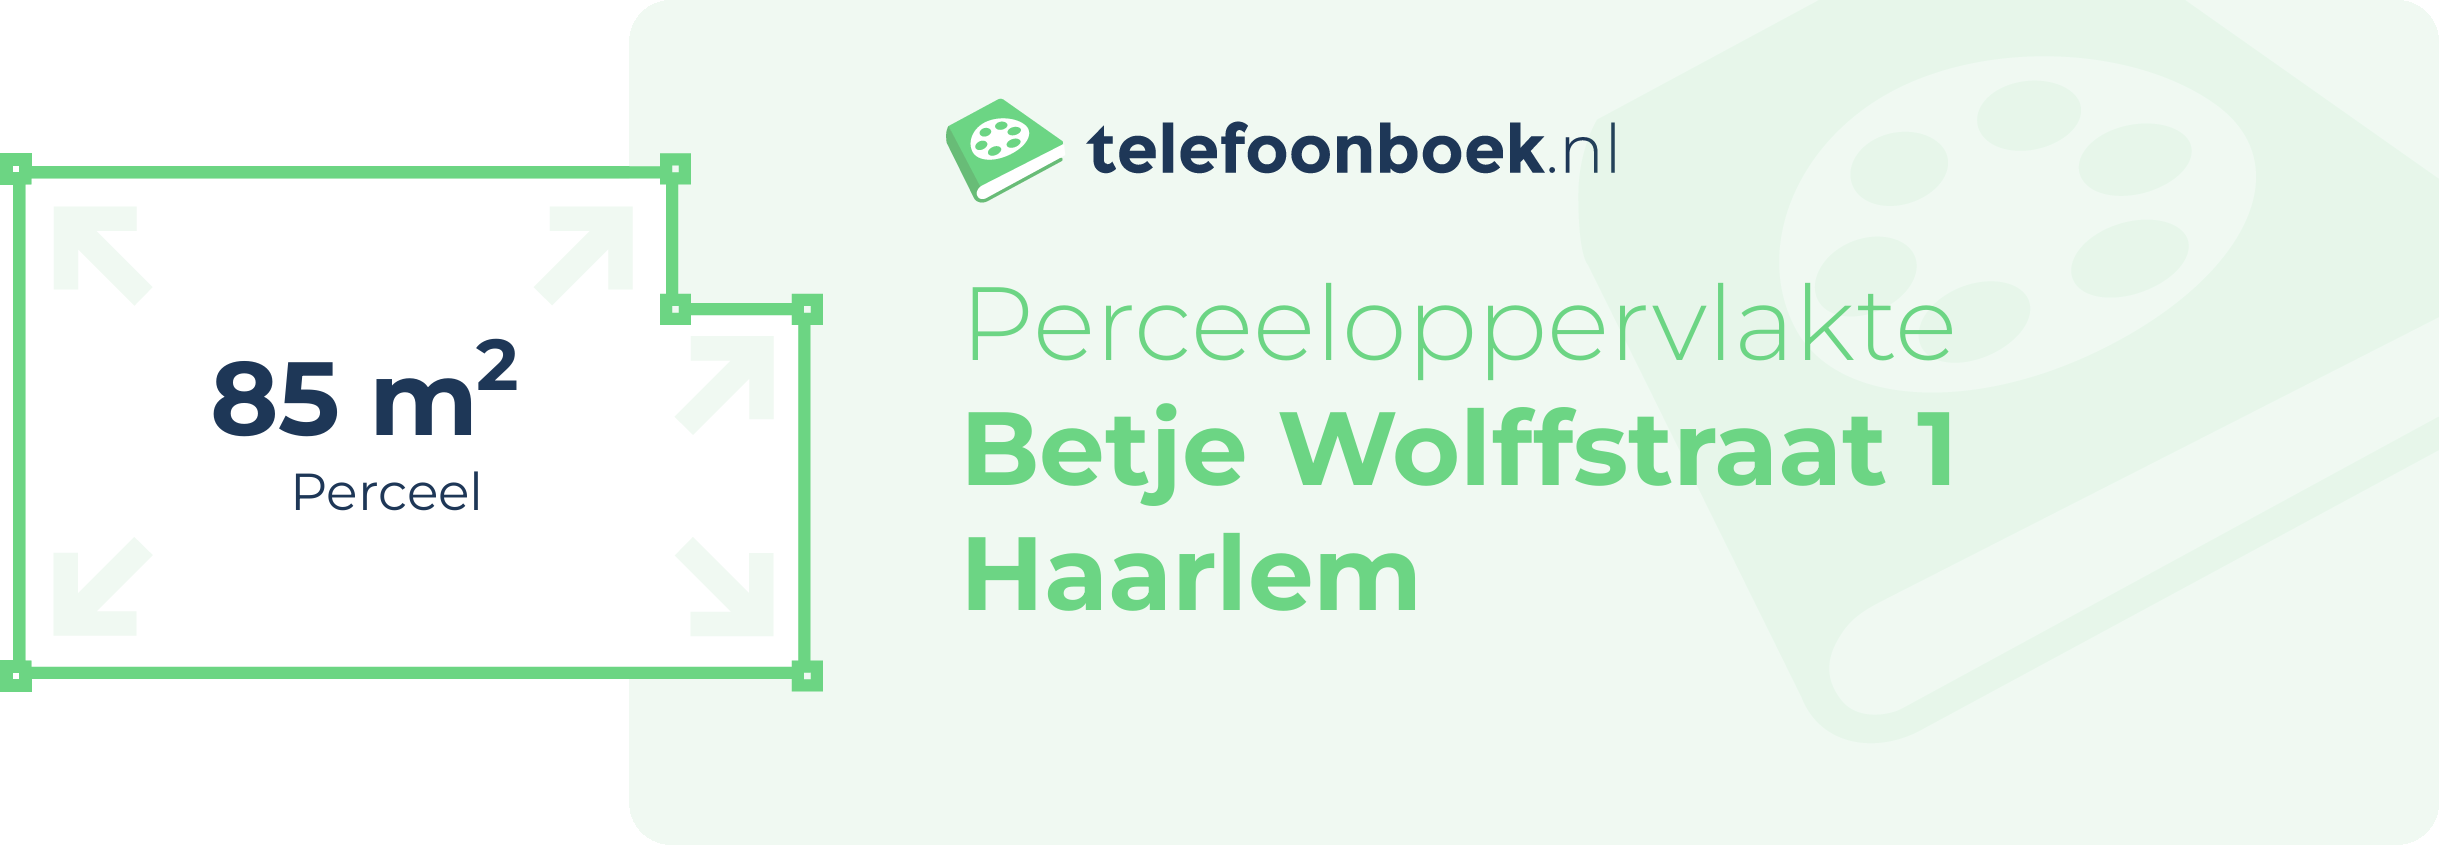 Perceeloppervlakte Betje Wolffstraat 1 Haarlem